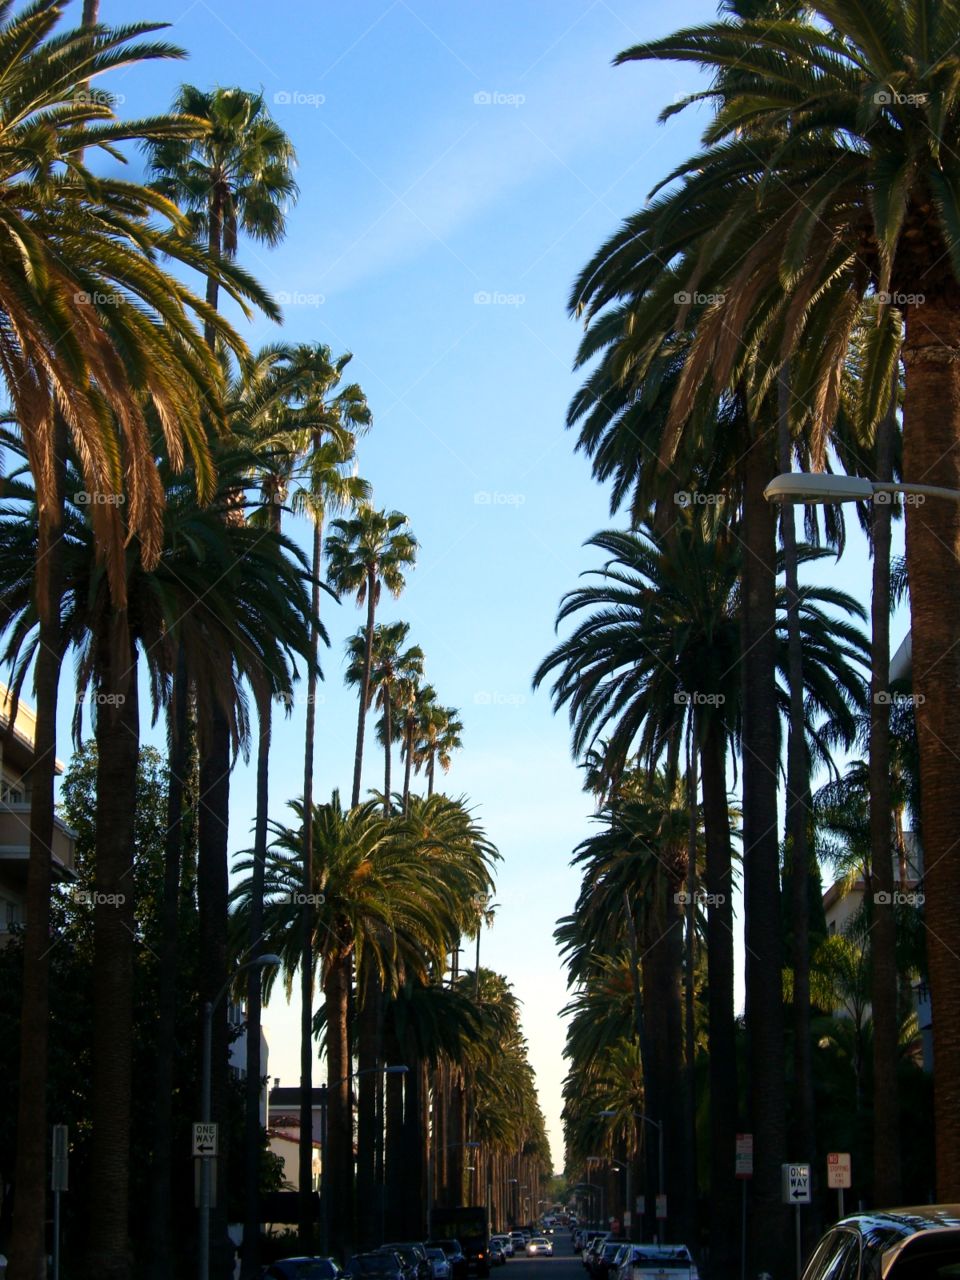 Palm trees on neighborhood street